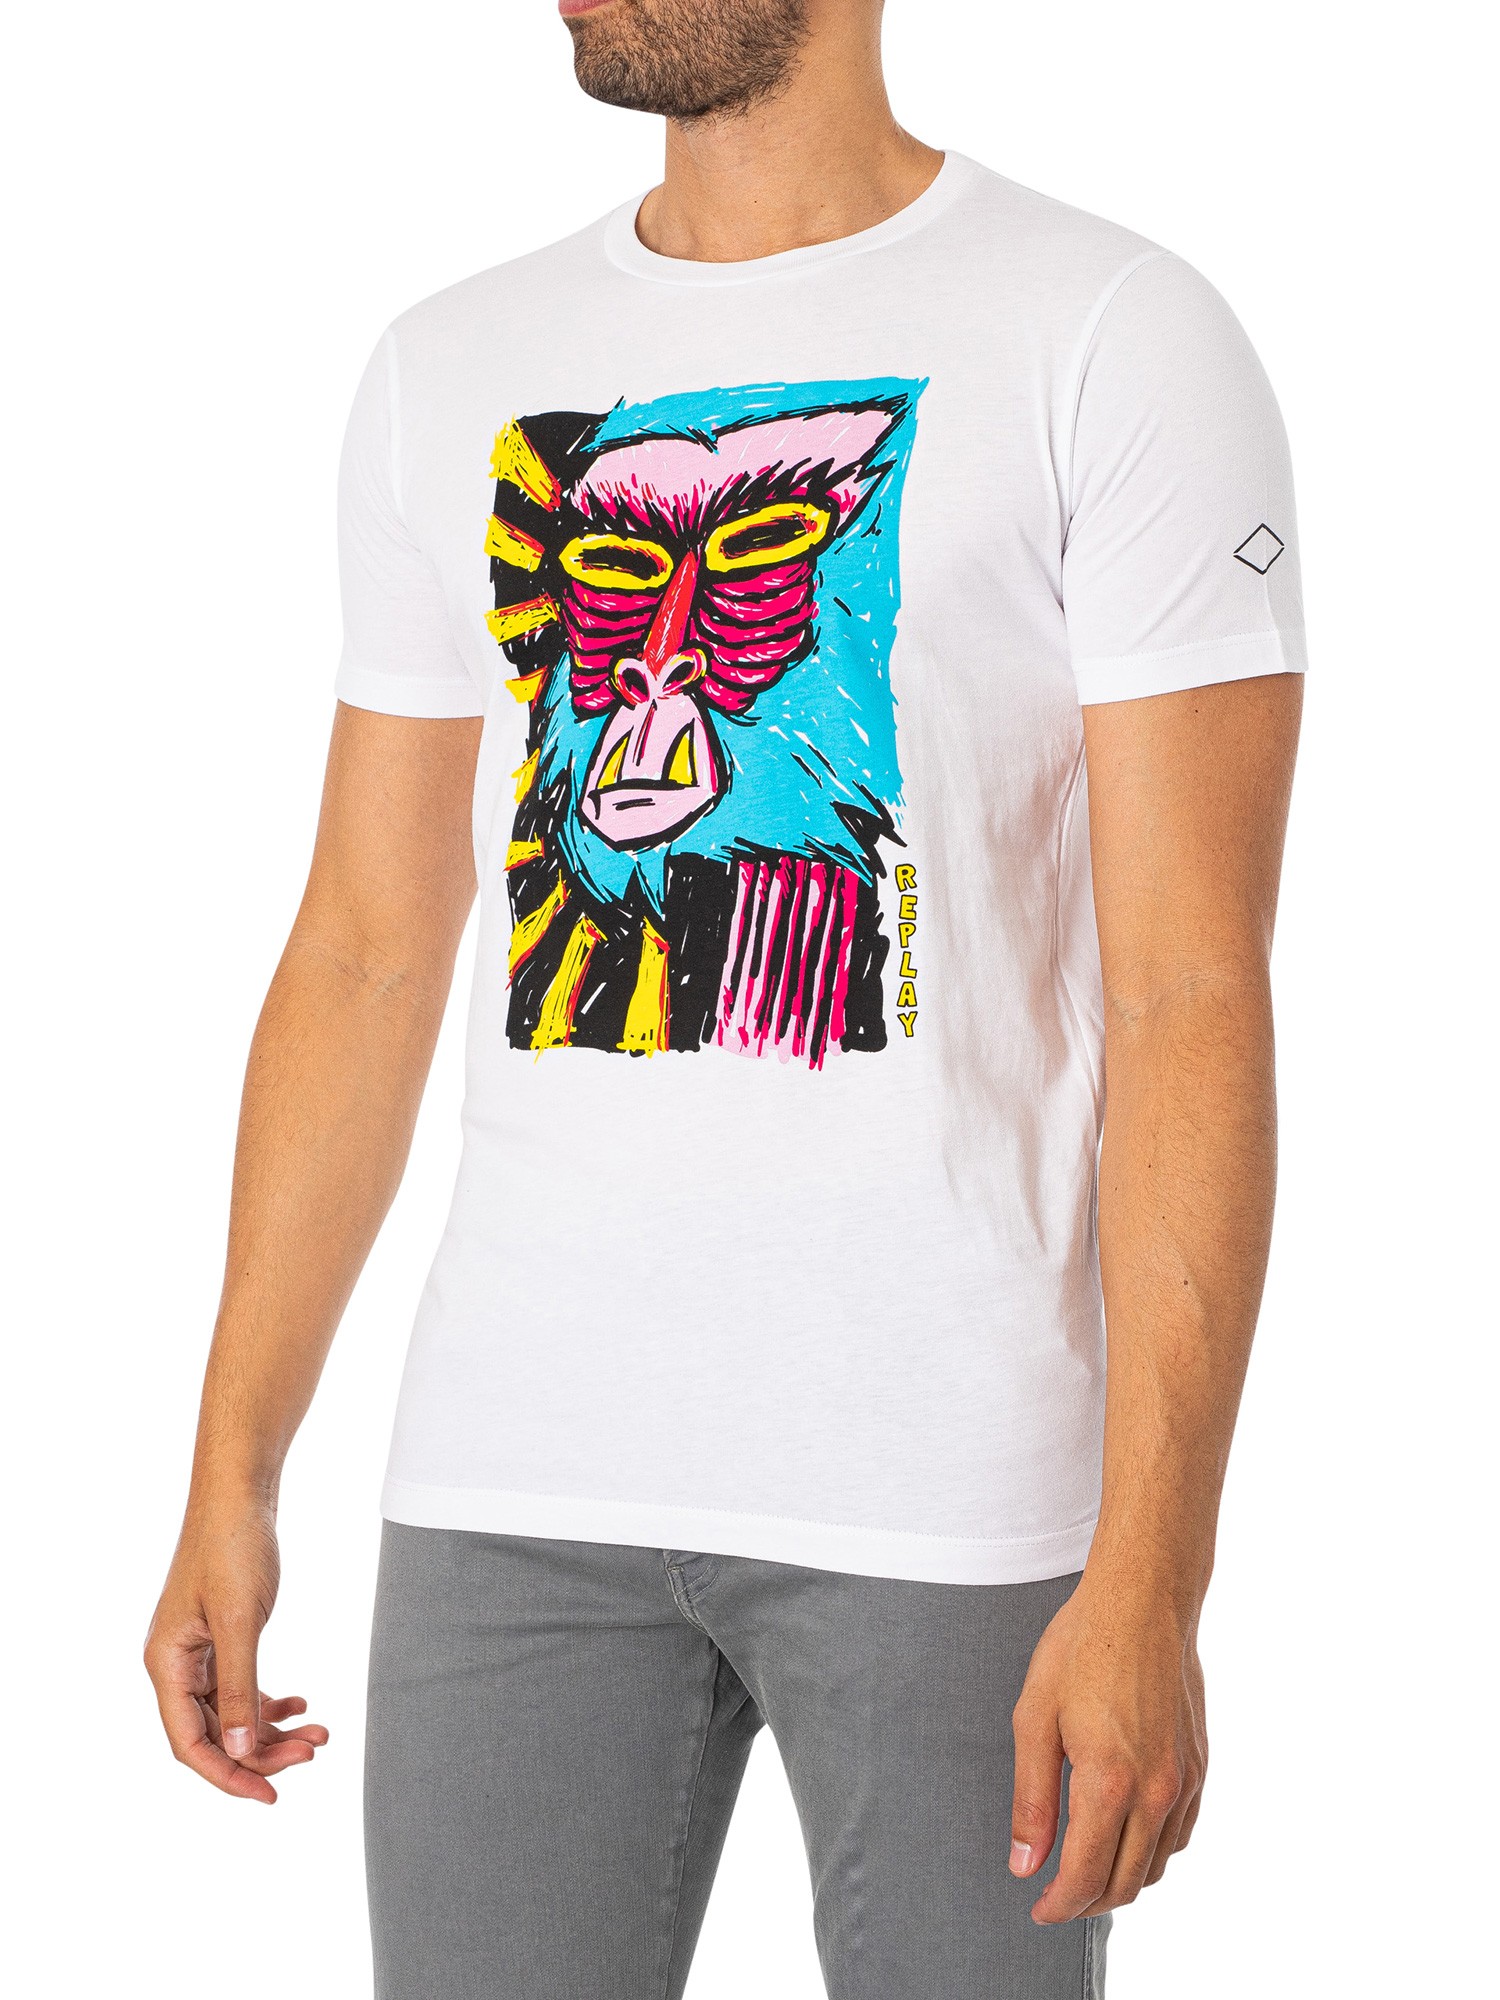 Replay Men's Monkey Graphic T-Shirt, White | eBay